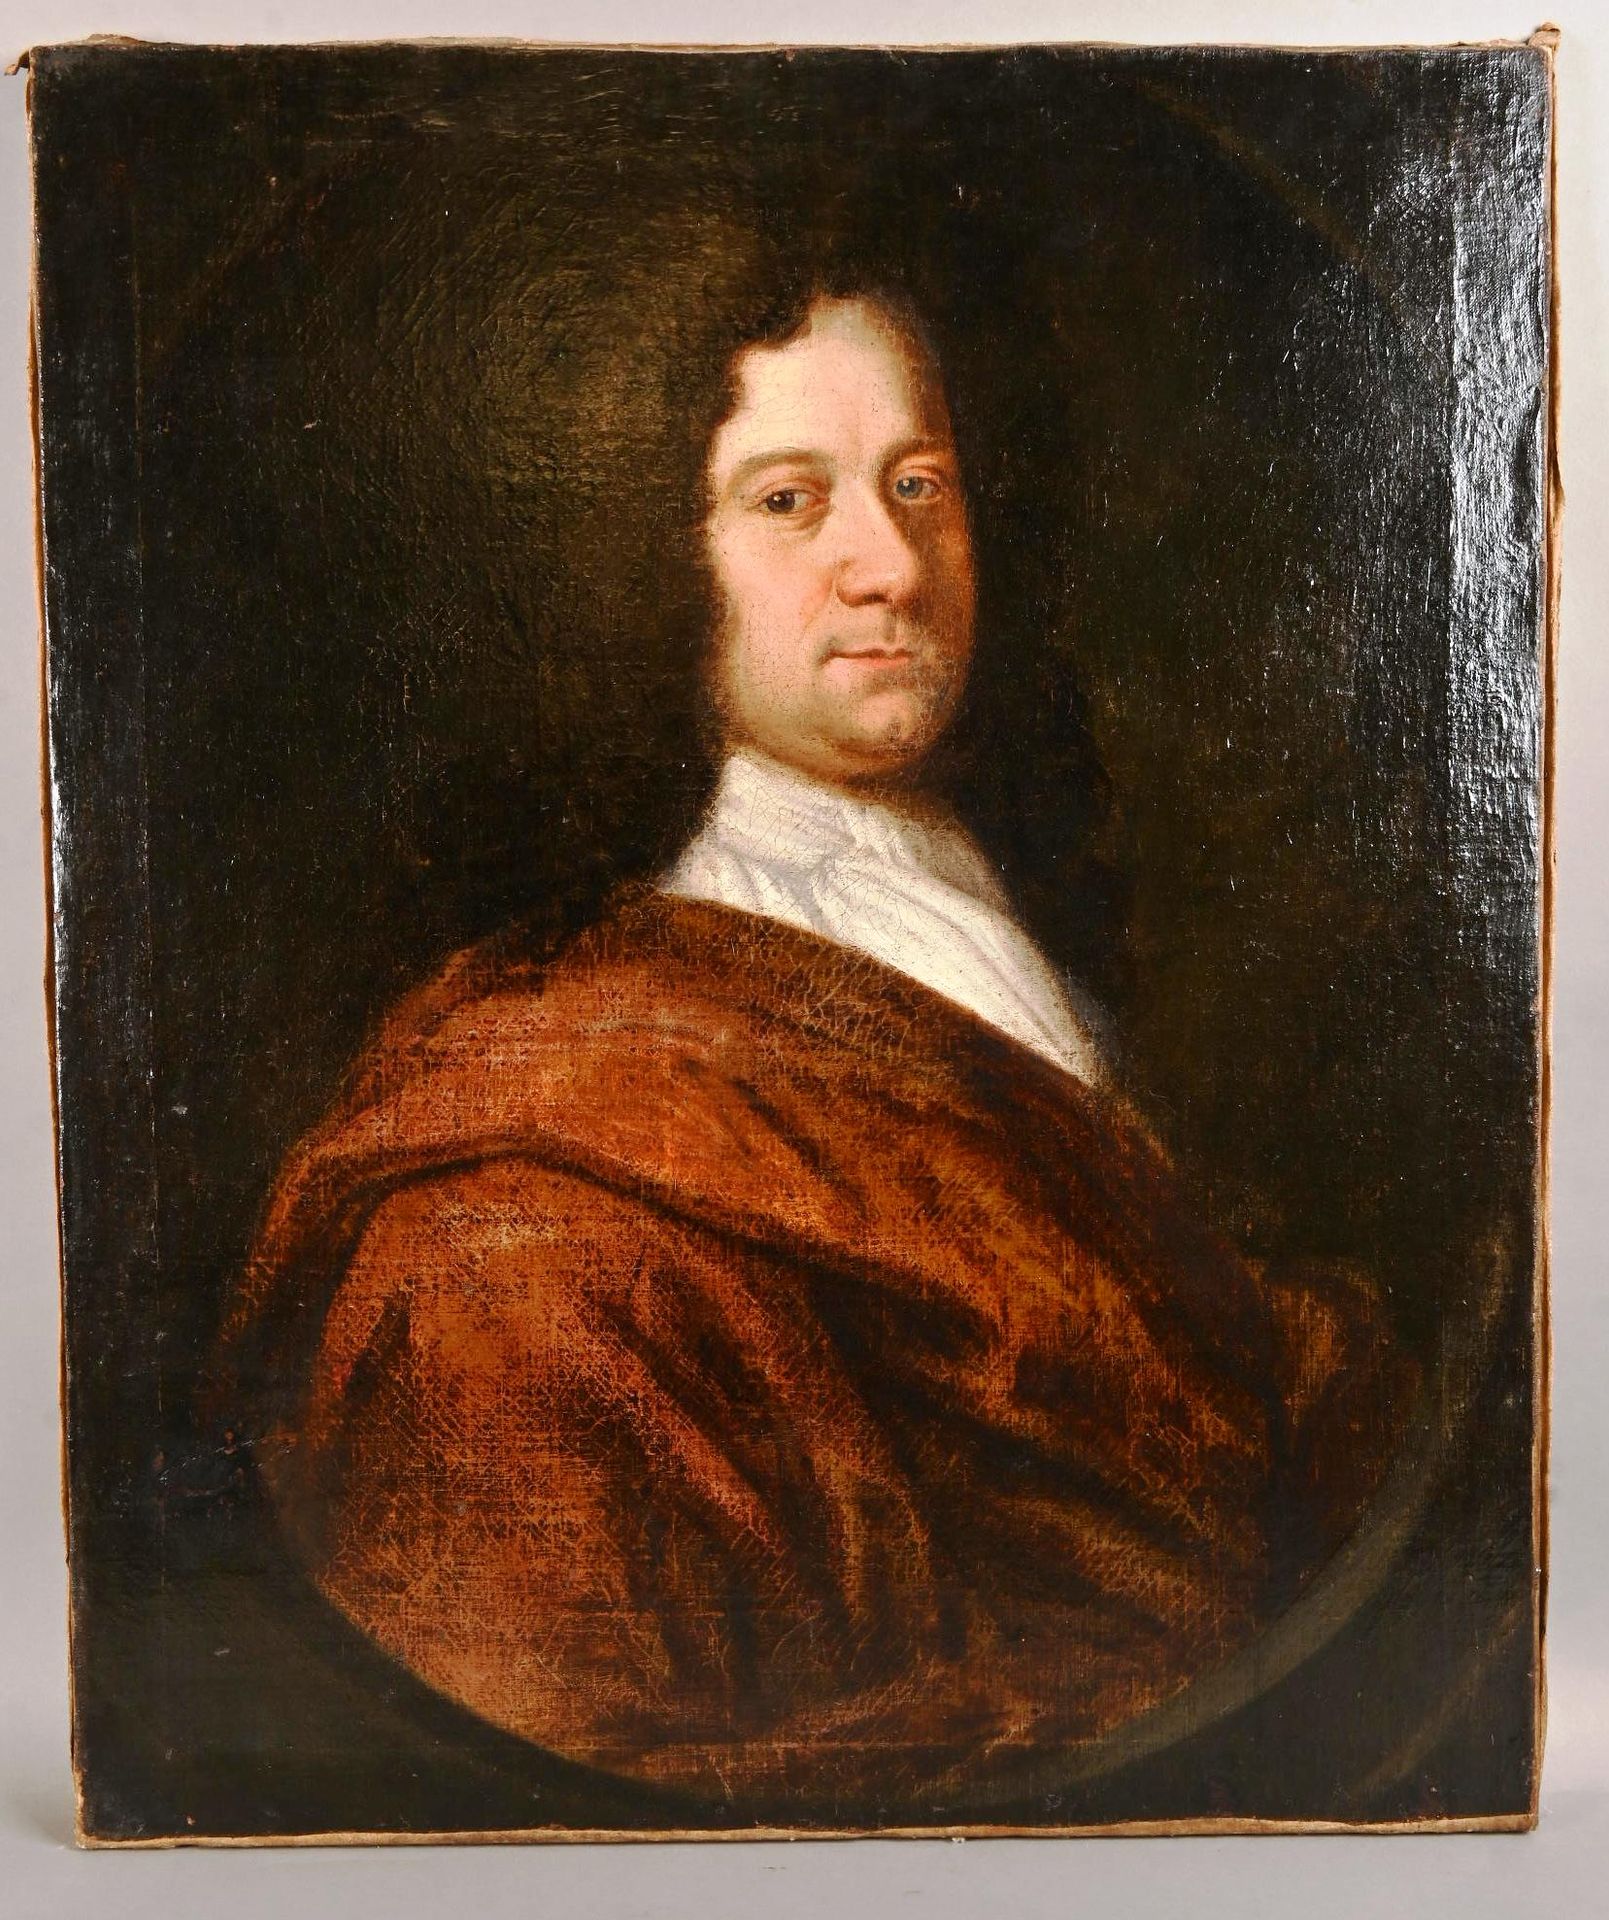 Ecole hollandaise du 18e siècle. Ecole hollandaise du XVIIIe siècle.
" Portrait &hellip;